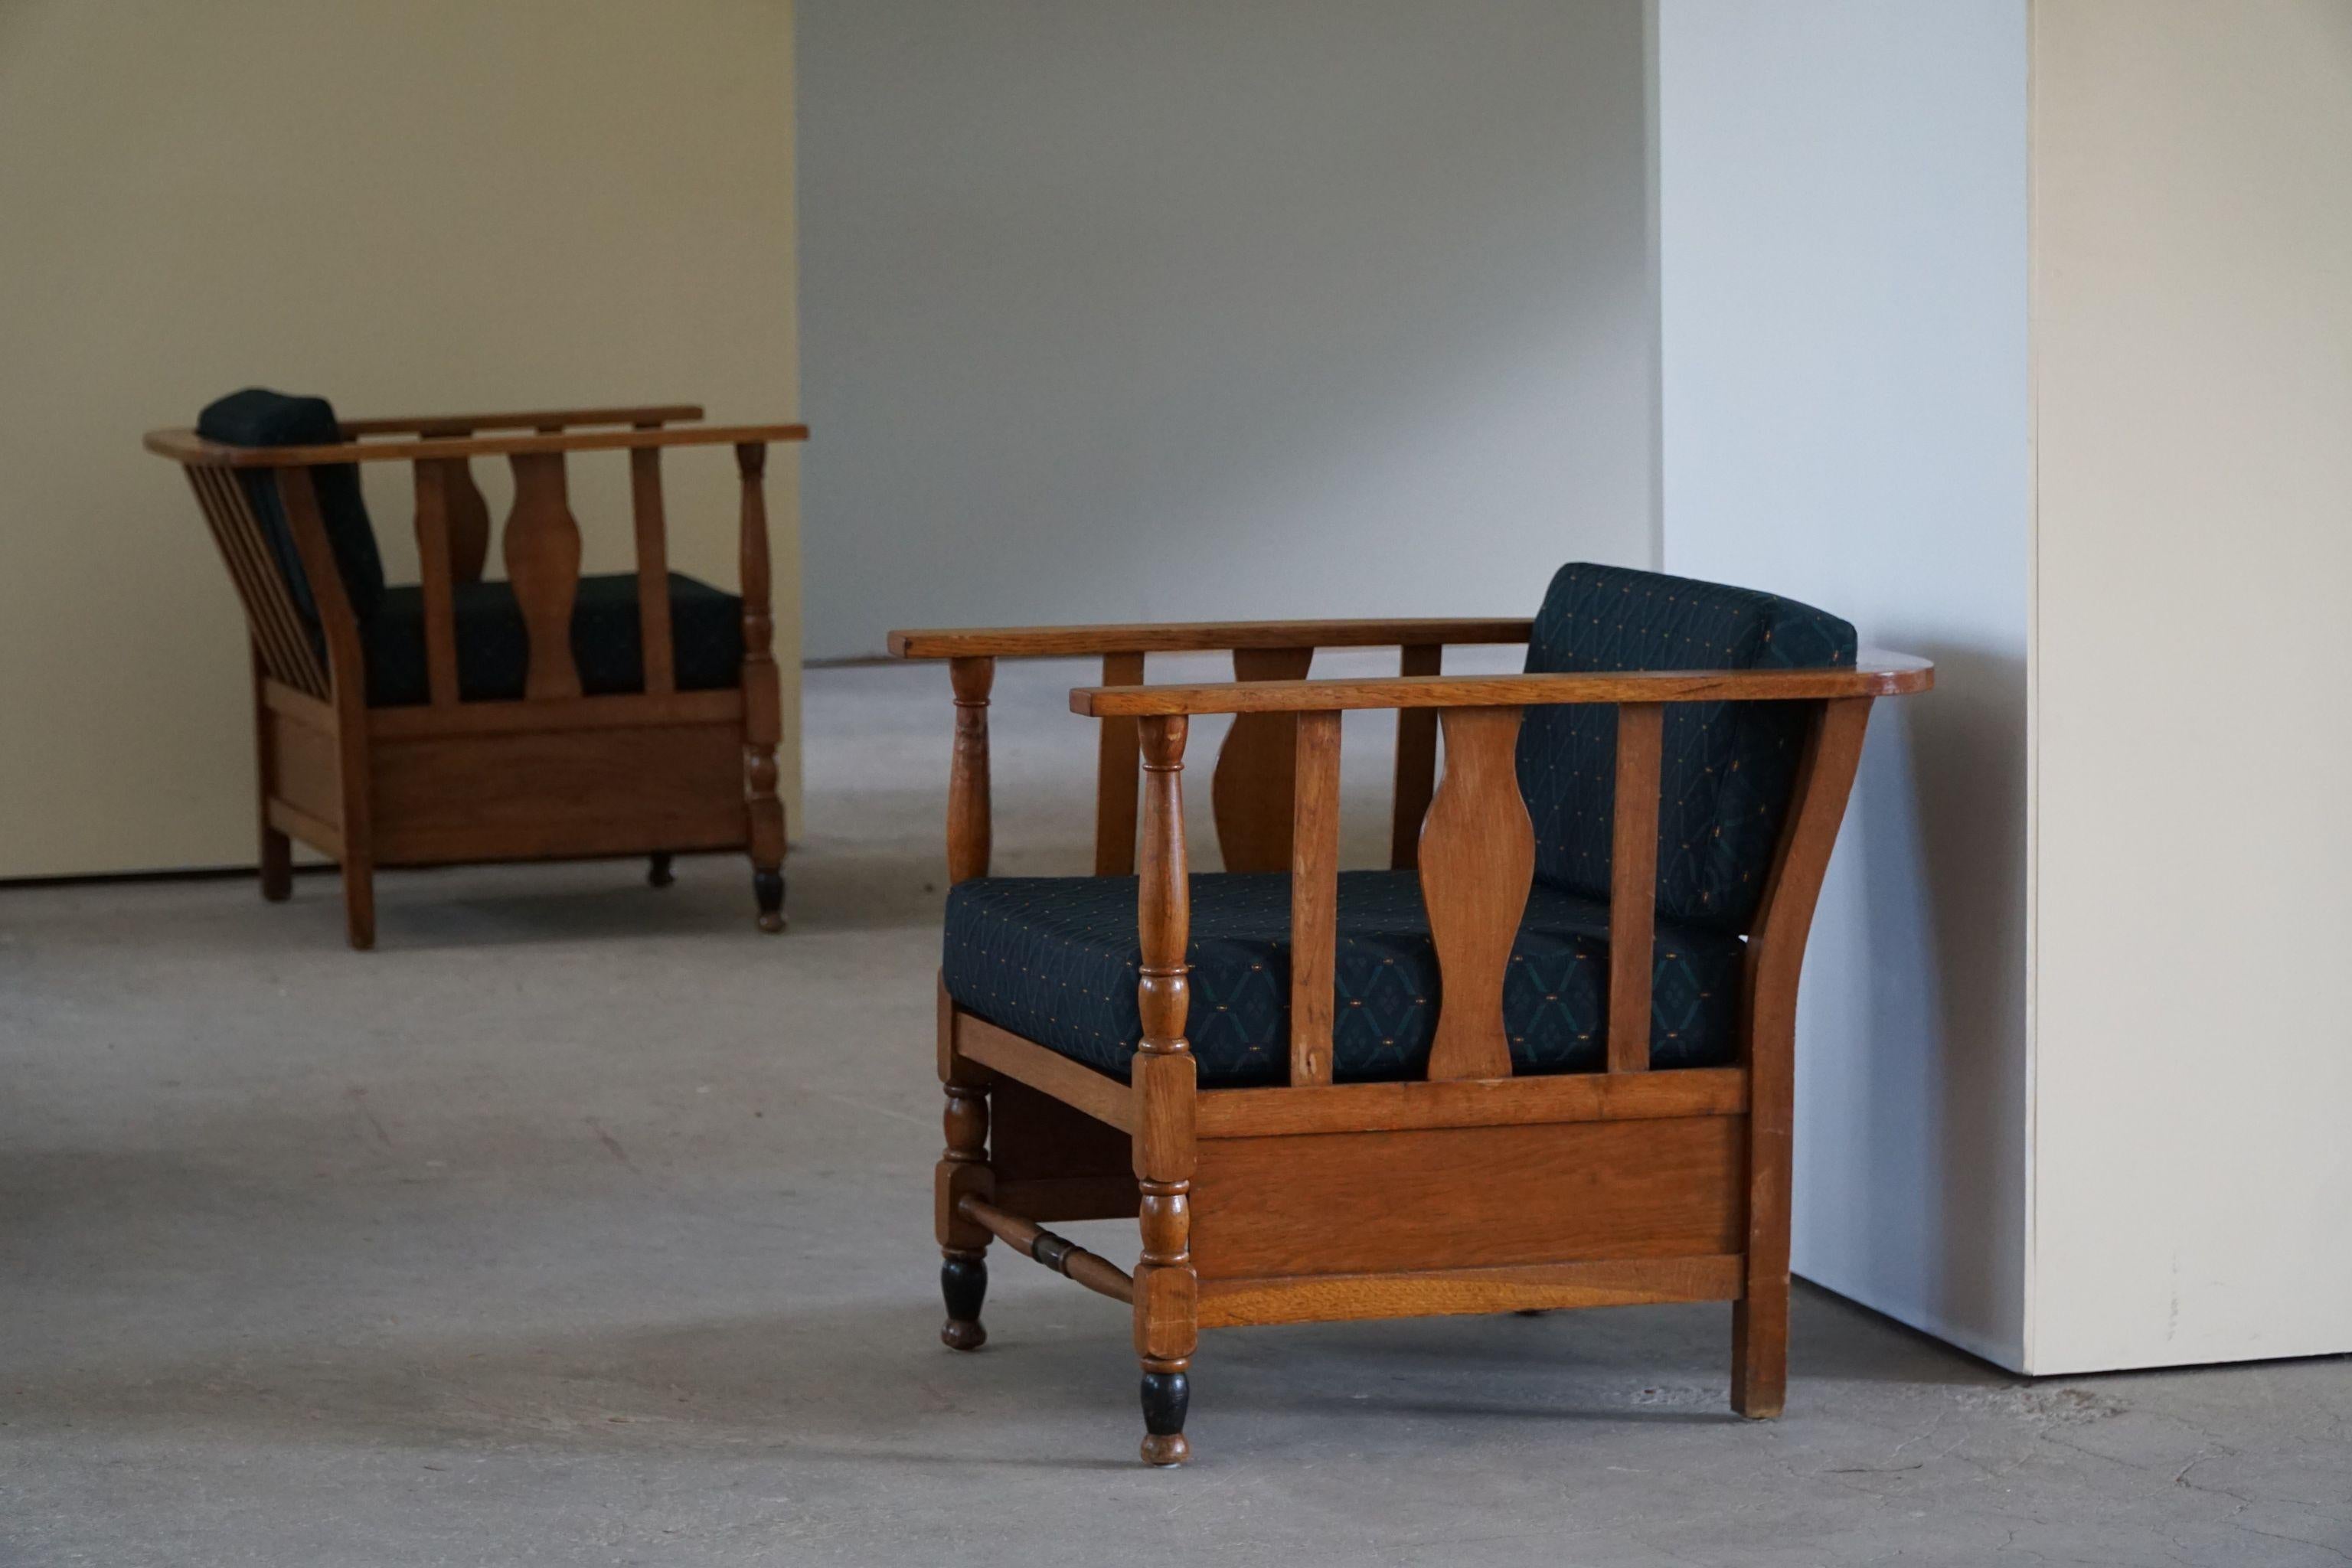 Rare paire de chaises longues / fauteuils sculpturaux en chêne massif, retapissés en tissu de style royal. Fabriqué par un ébéniste danois au début des années 1900.
Ces magnifiques chaises vintage s'accorderont avec de nombreux styles d'intérieur